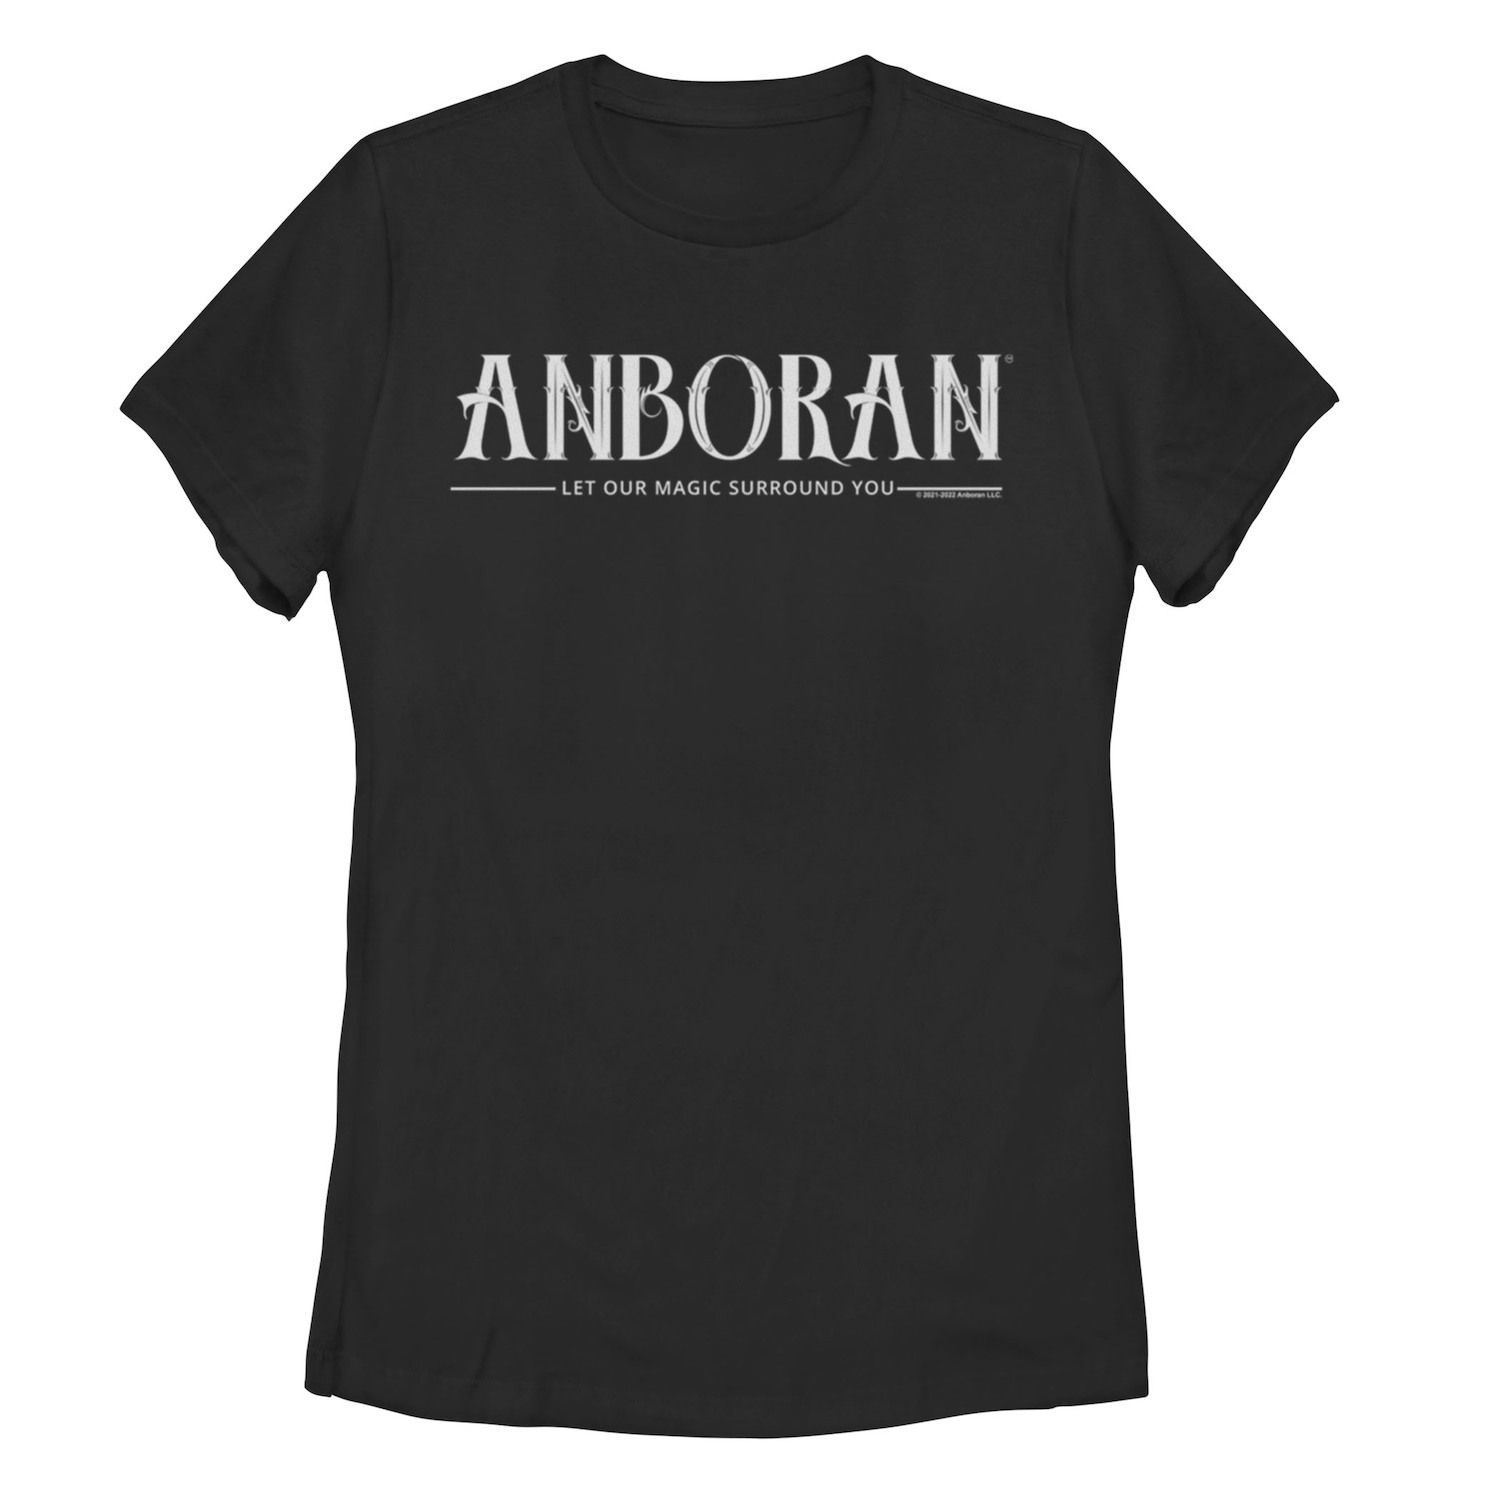 

Детская футболка Anboran Magic Surround You с графическим рисунком Licensed Character